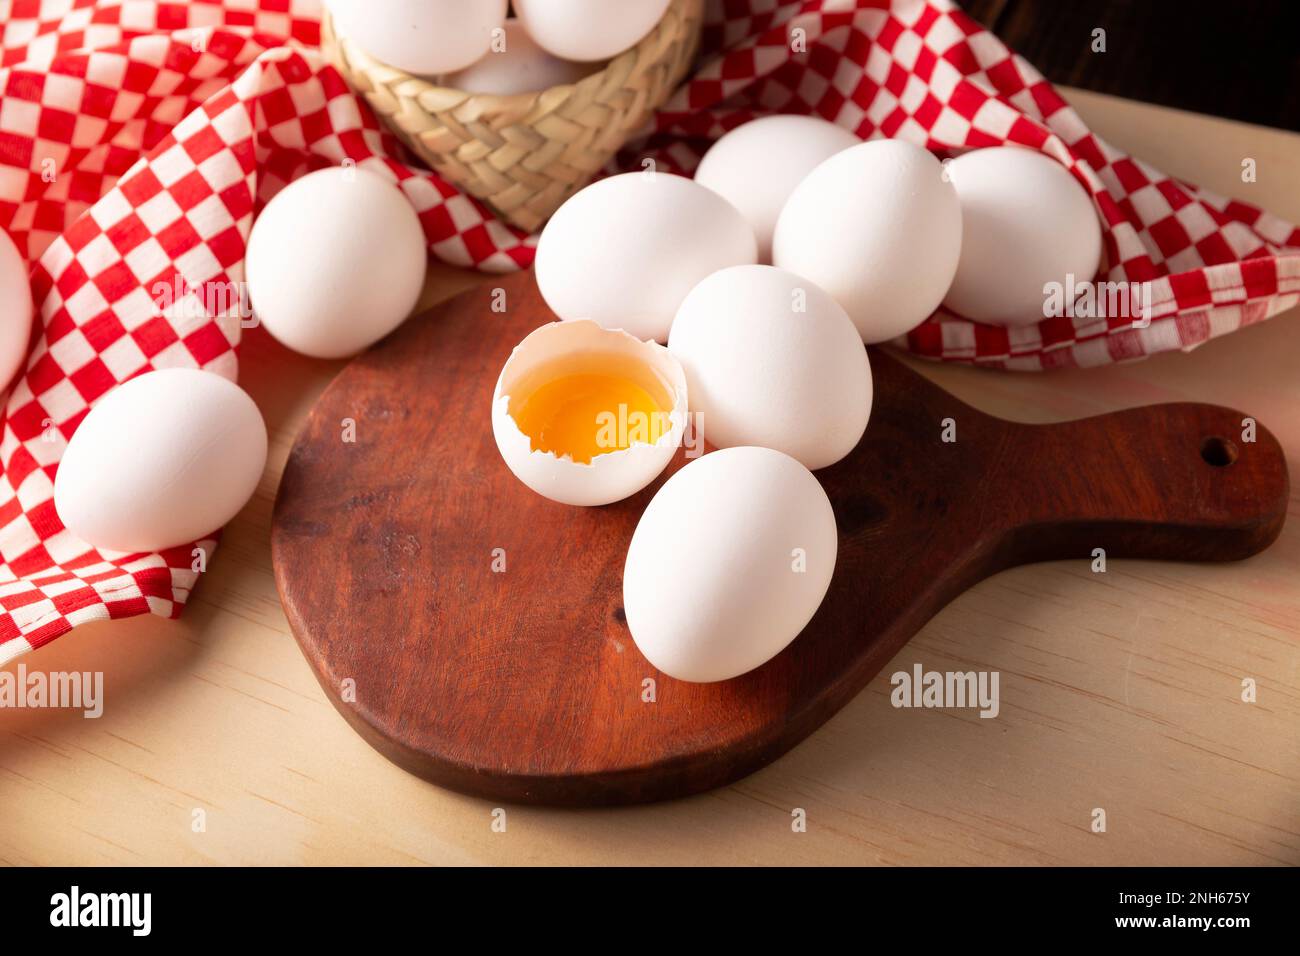 De nombreux œufs de poulet sur une table en bois rustique. Produit alimentaire nutritif et économique très populaire. Gros plan. Banque D'Images